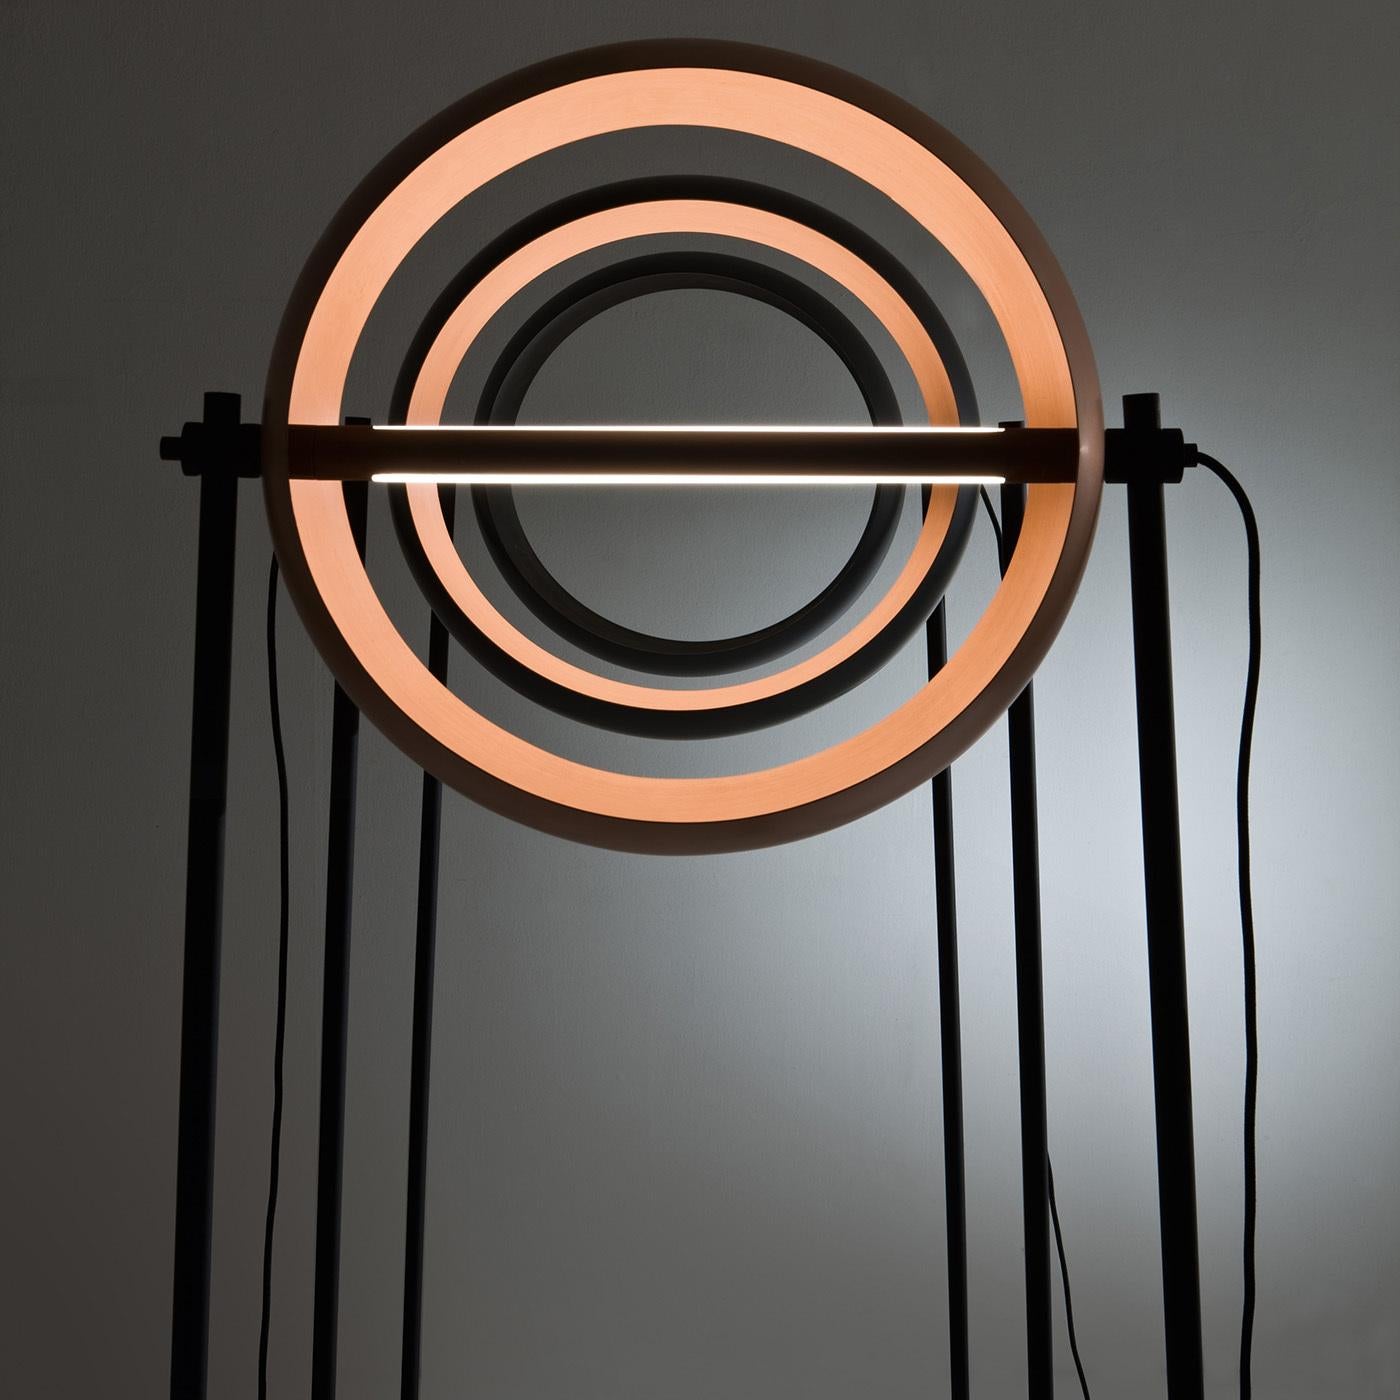 Ce lampadaire captivant est un design exclusif primé d'Edoardo Colzani qui présente une base métallique finement sculptée, un pivot central distinctif et un abat-jour rotatif en cuivre satiné entièrement fait à la main. L'éclairage LED chaleureux